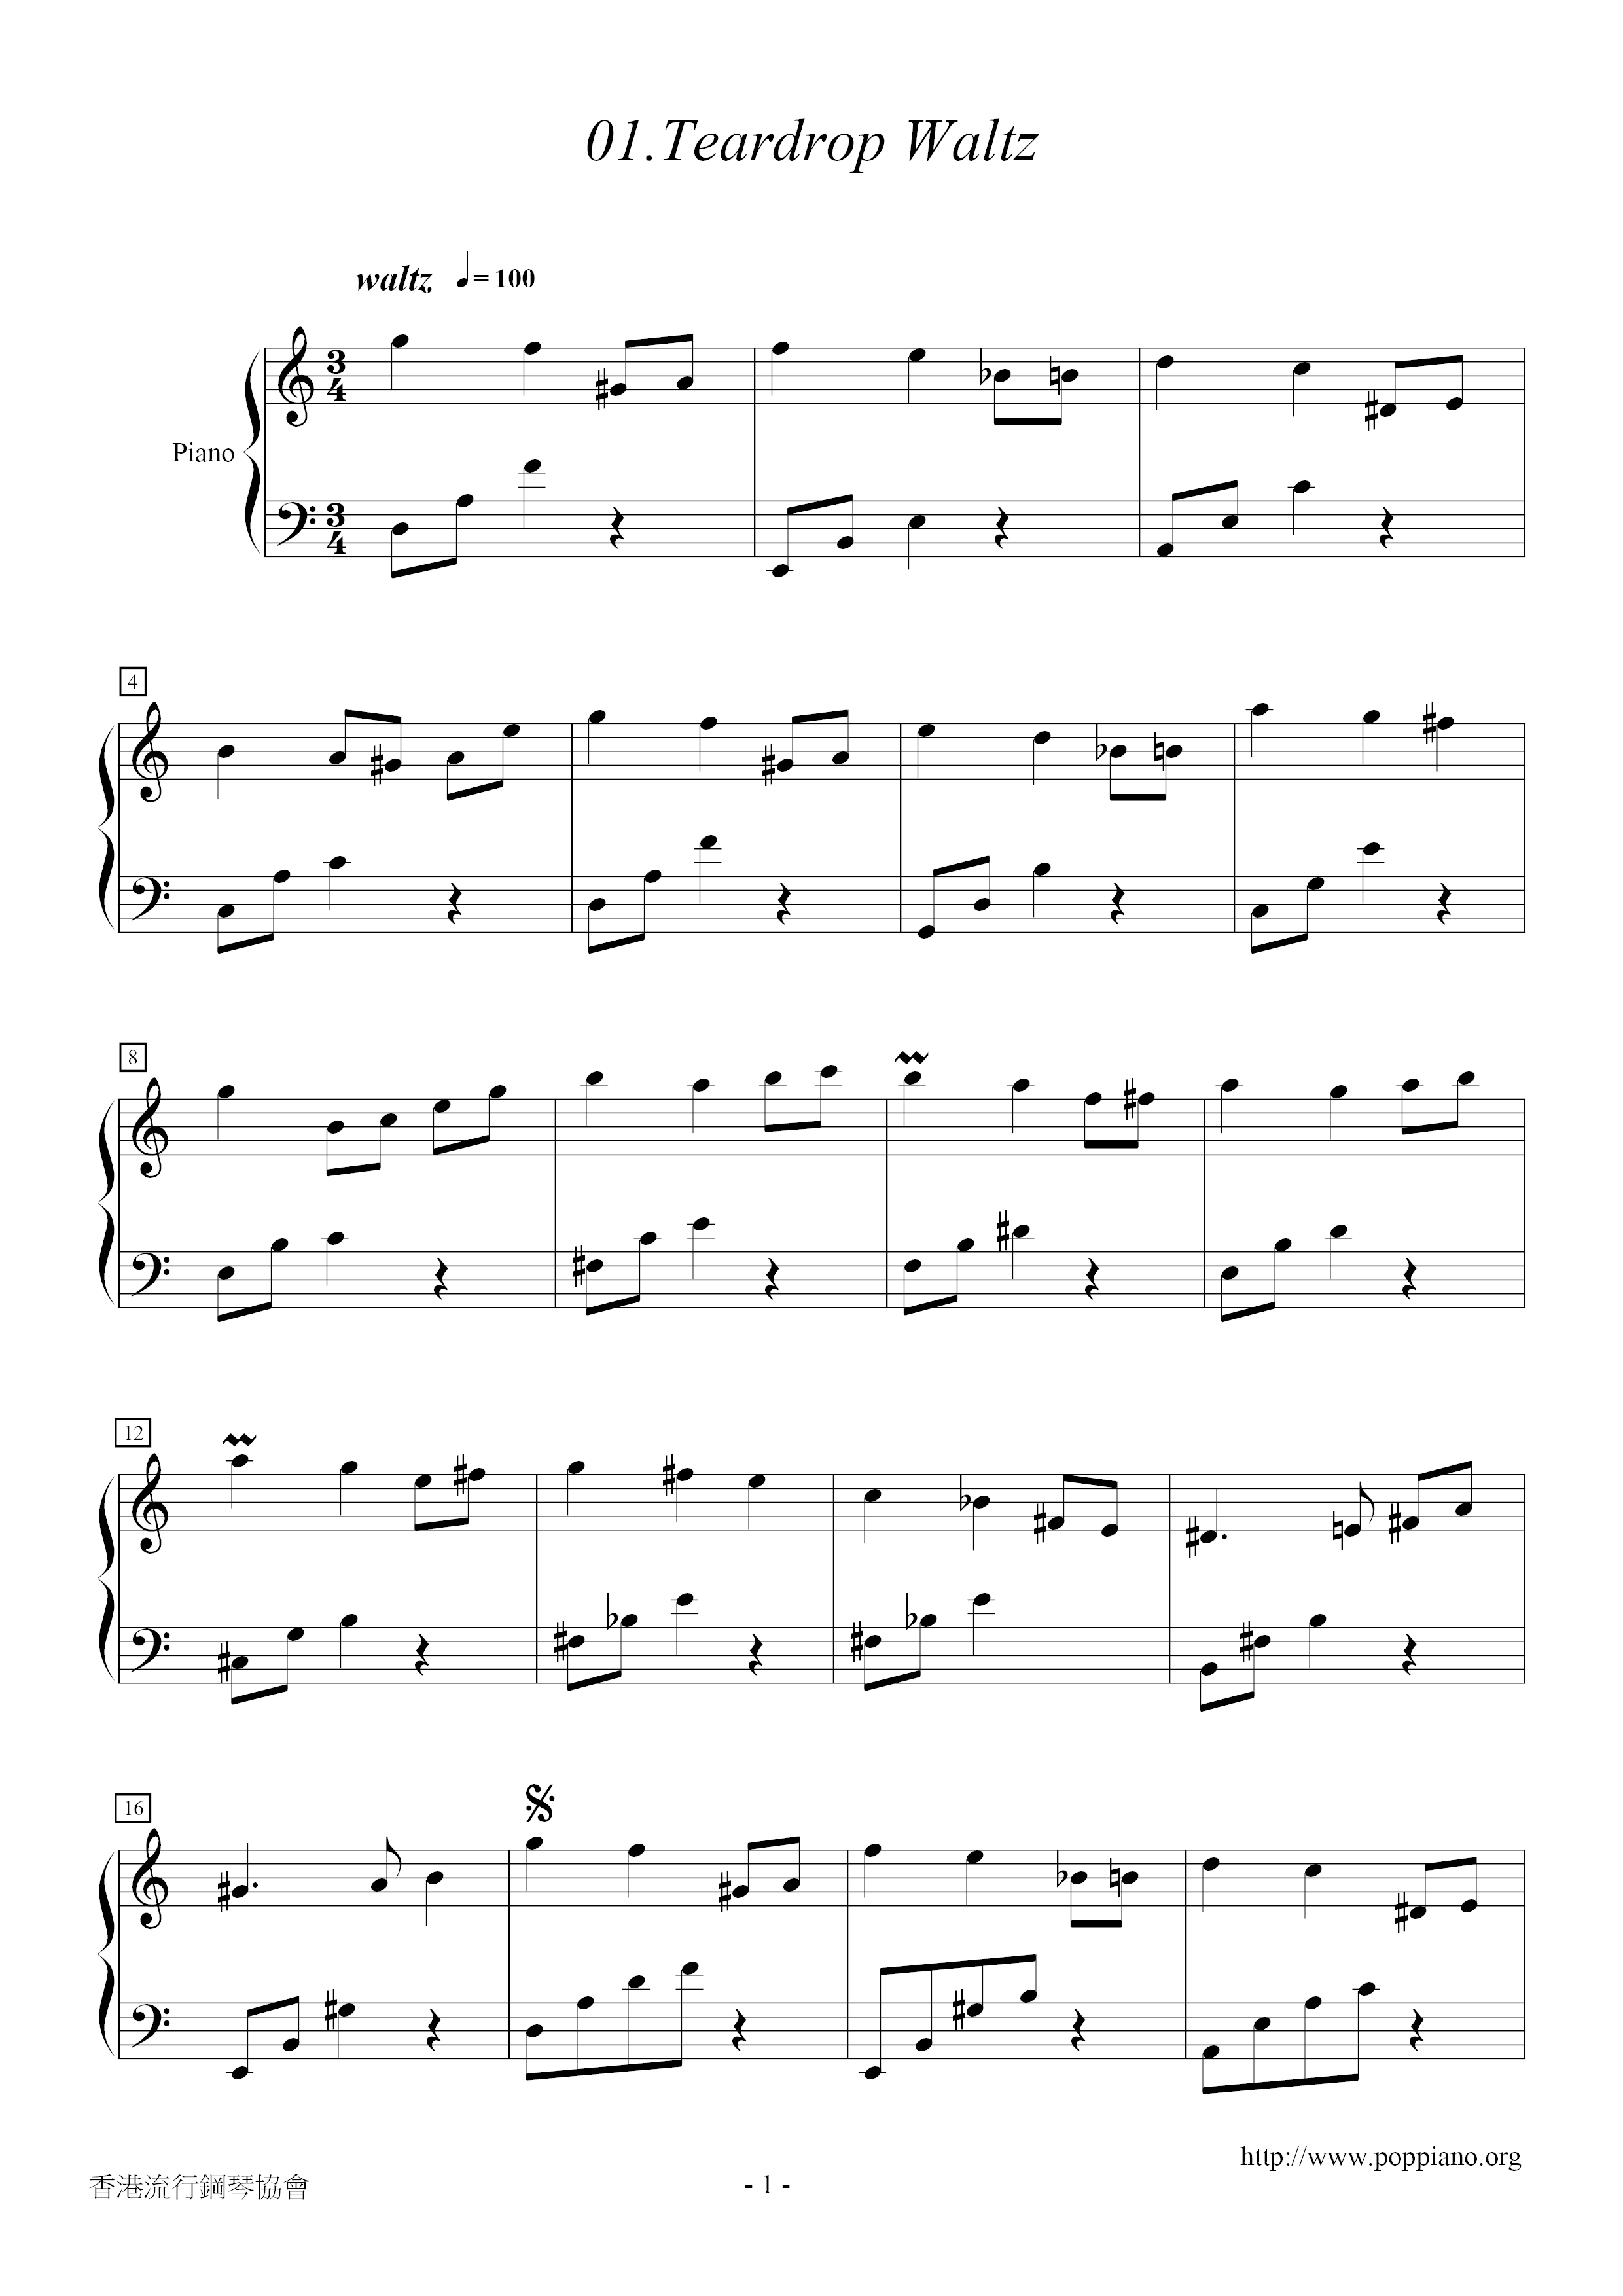 Spring Waltz - Teardrop Waltz Score